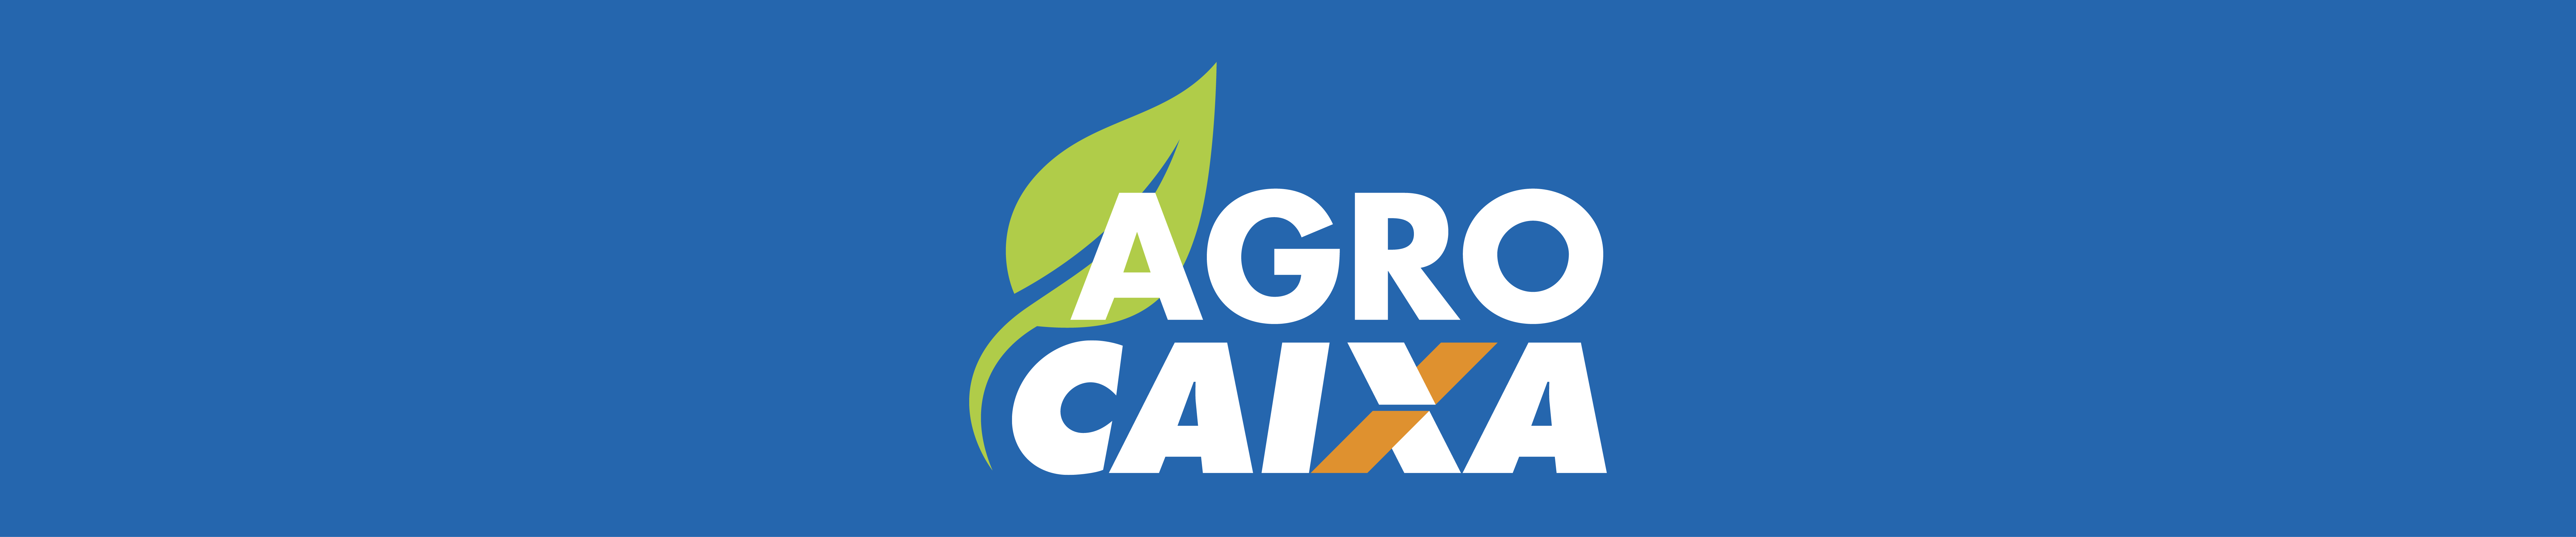 Banner AgroCaixa 1920x400